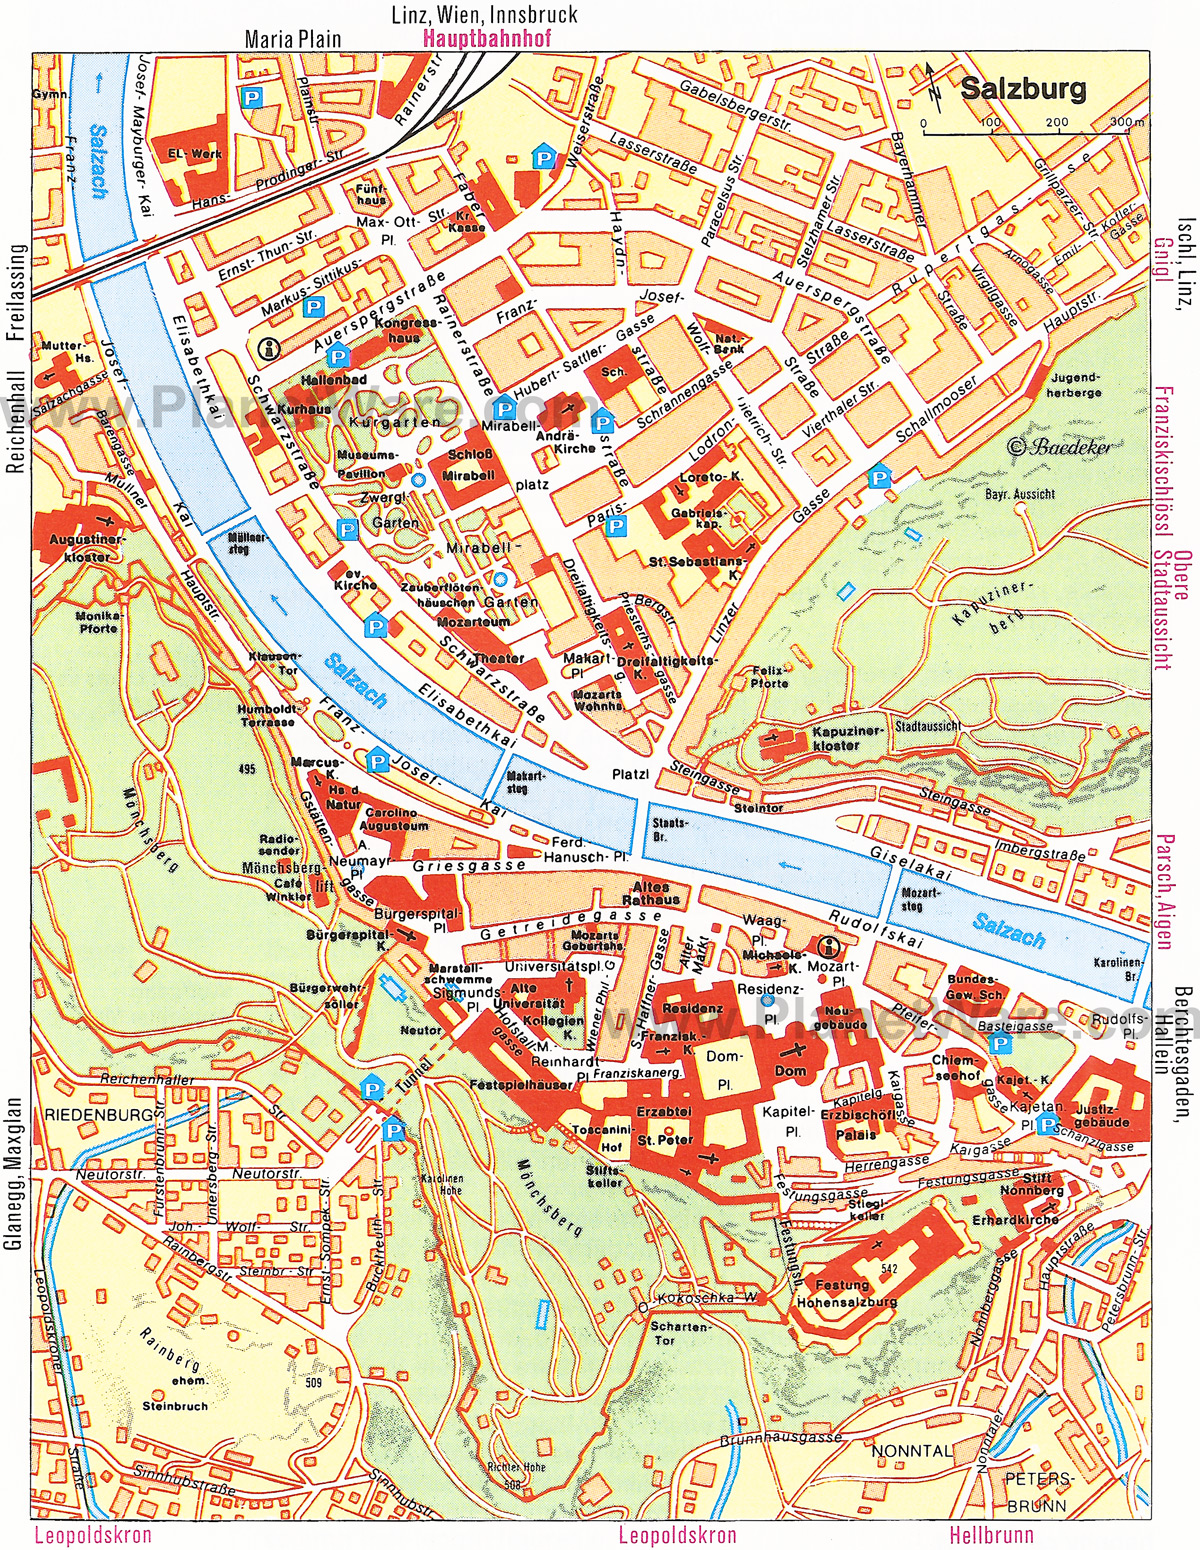 salzburg térkép Salzburg Map   Detailed City and Metro Maps of Salzburg for  salzburg térkép